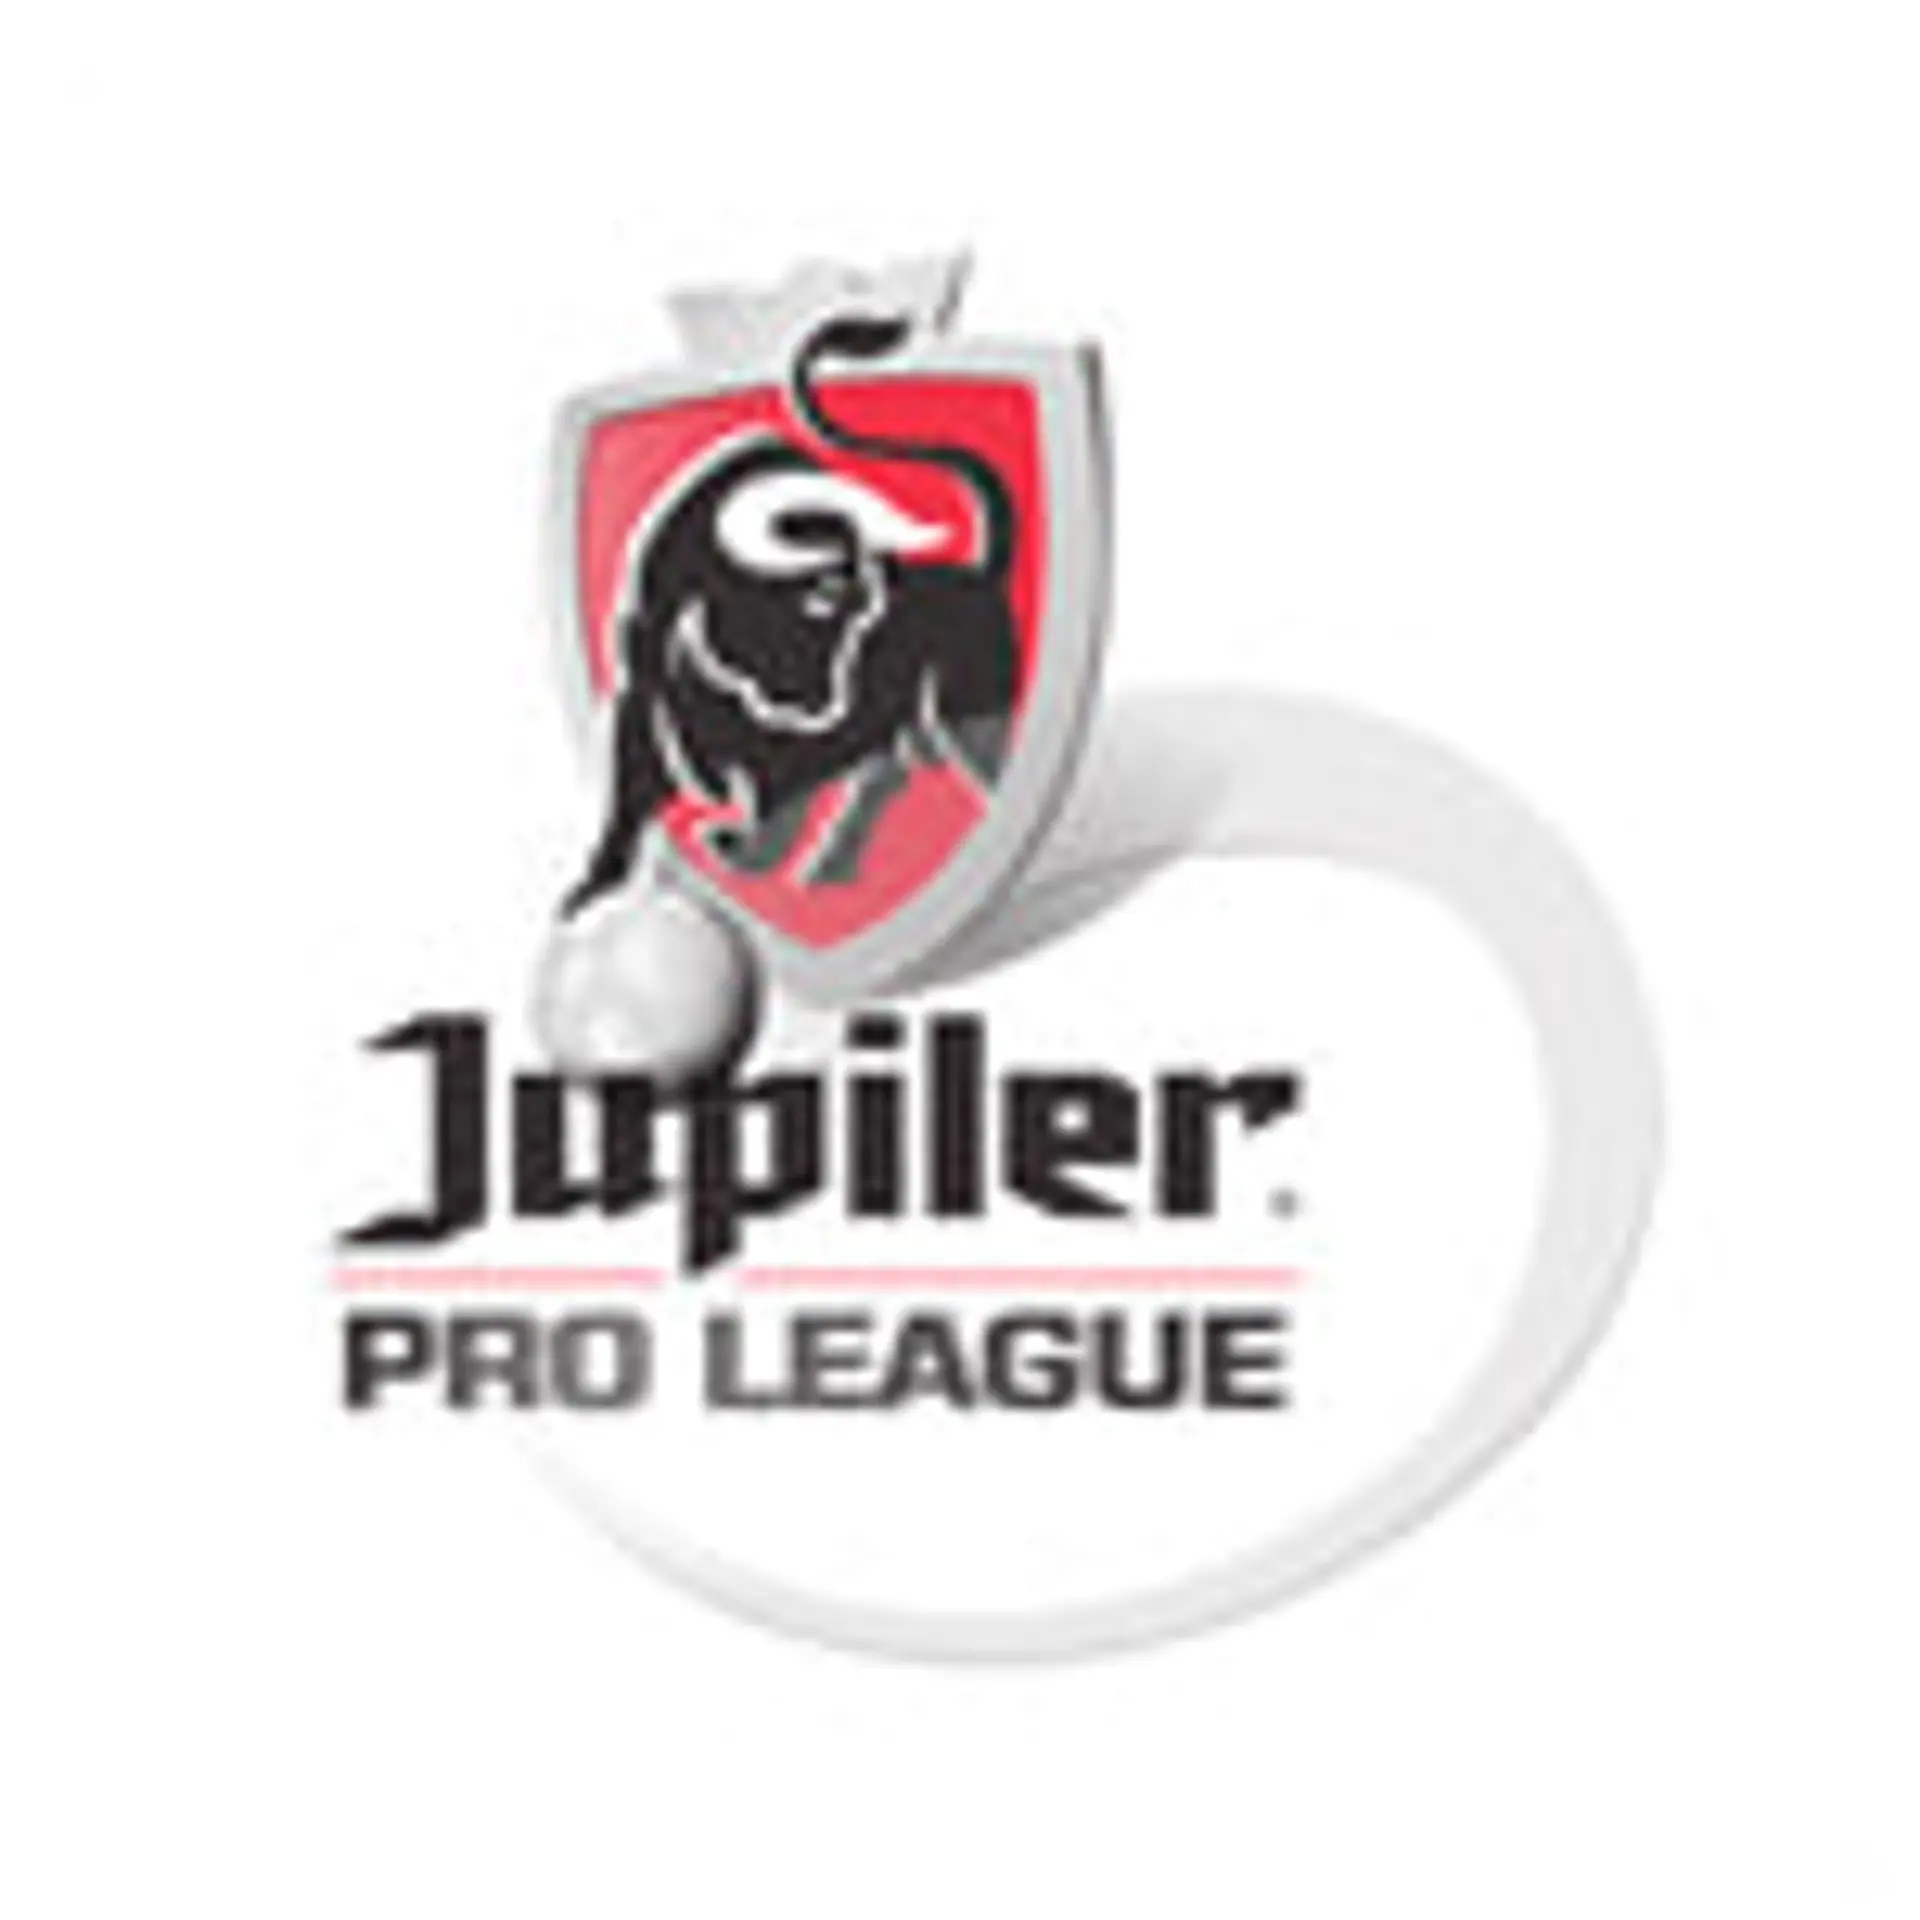 Belgien. Pro League